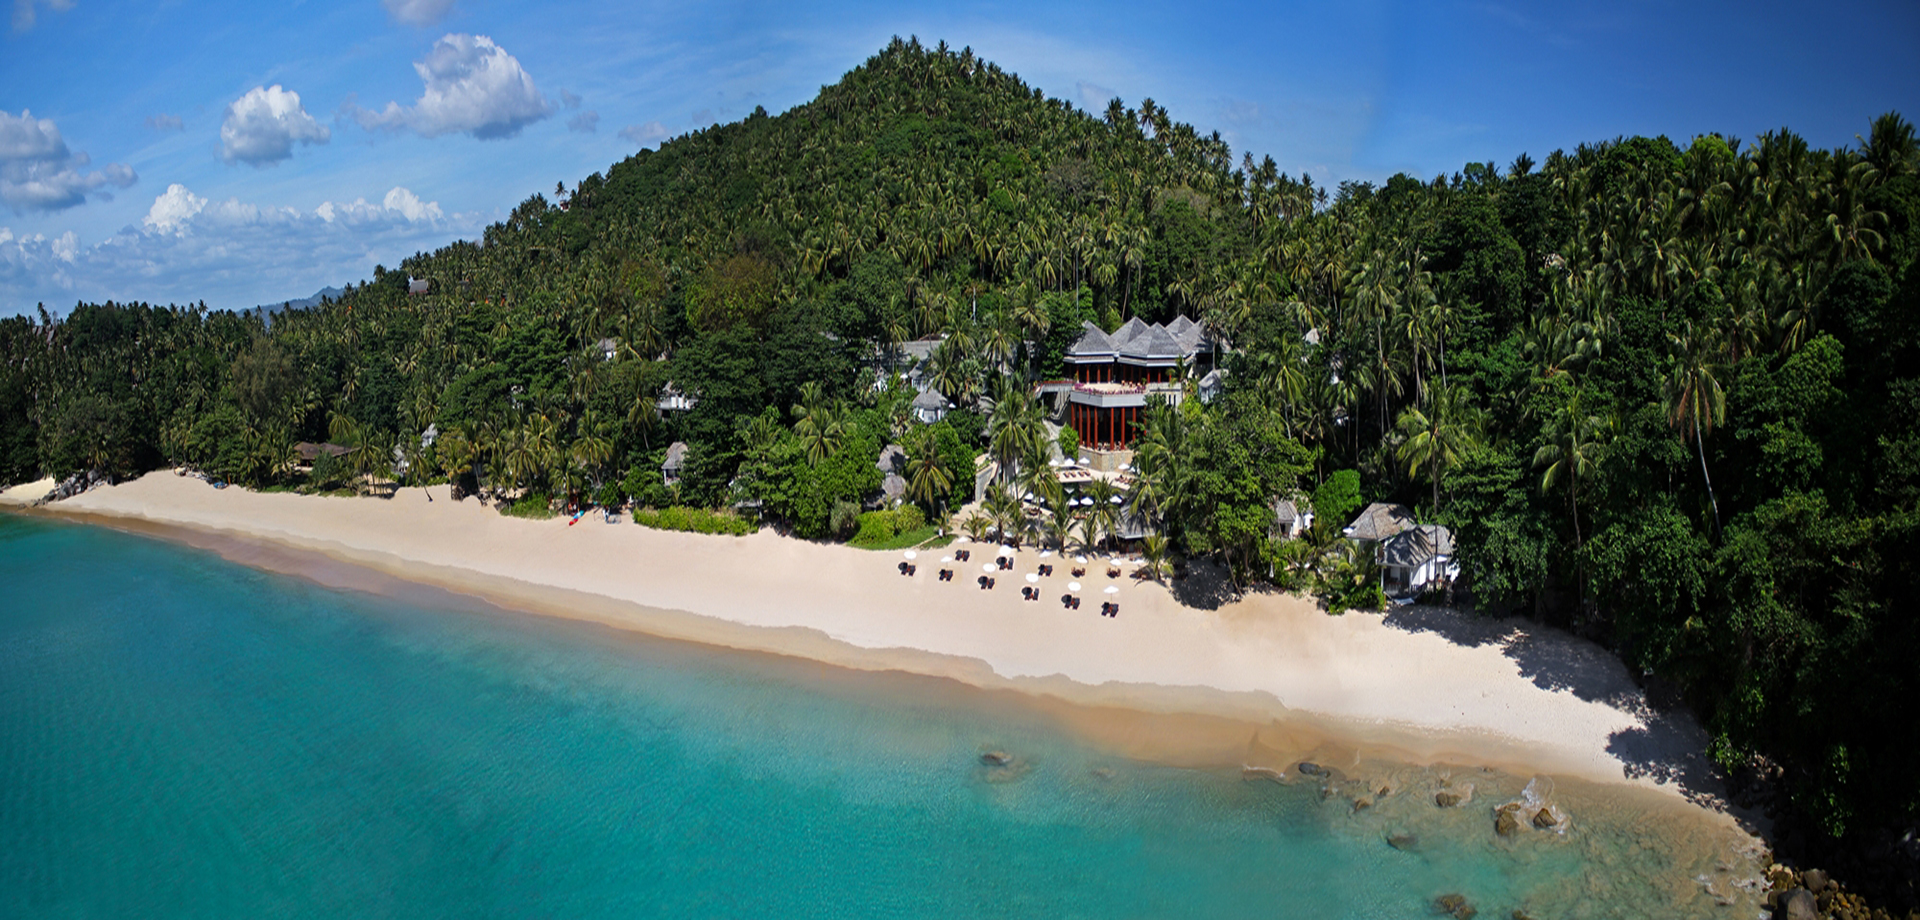 The Surin Phuket Resort.